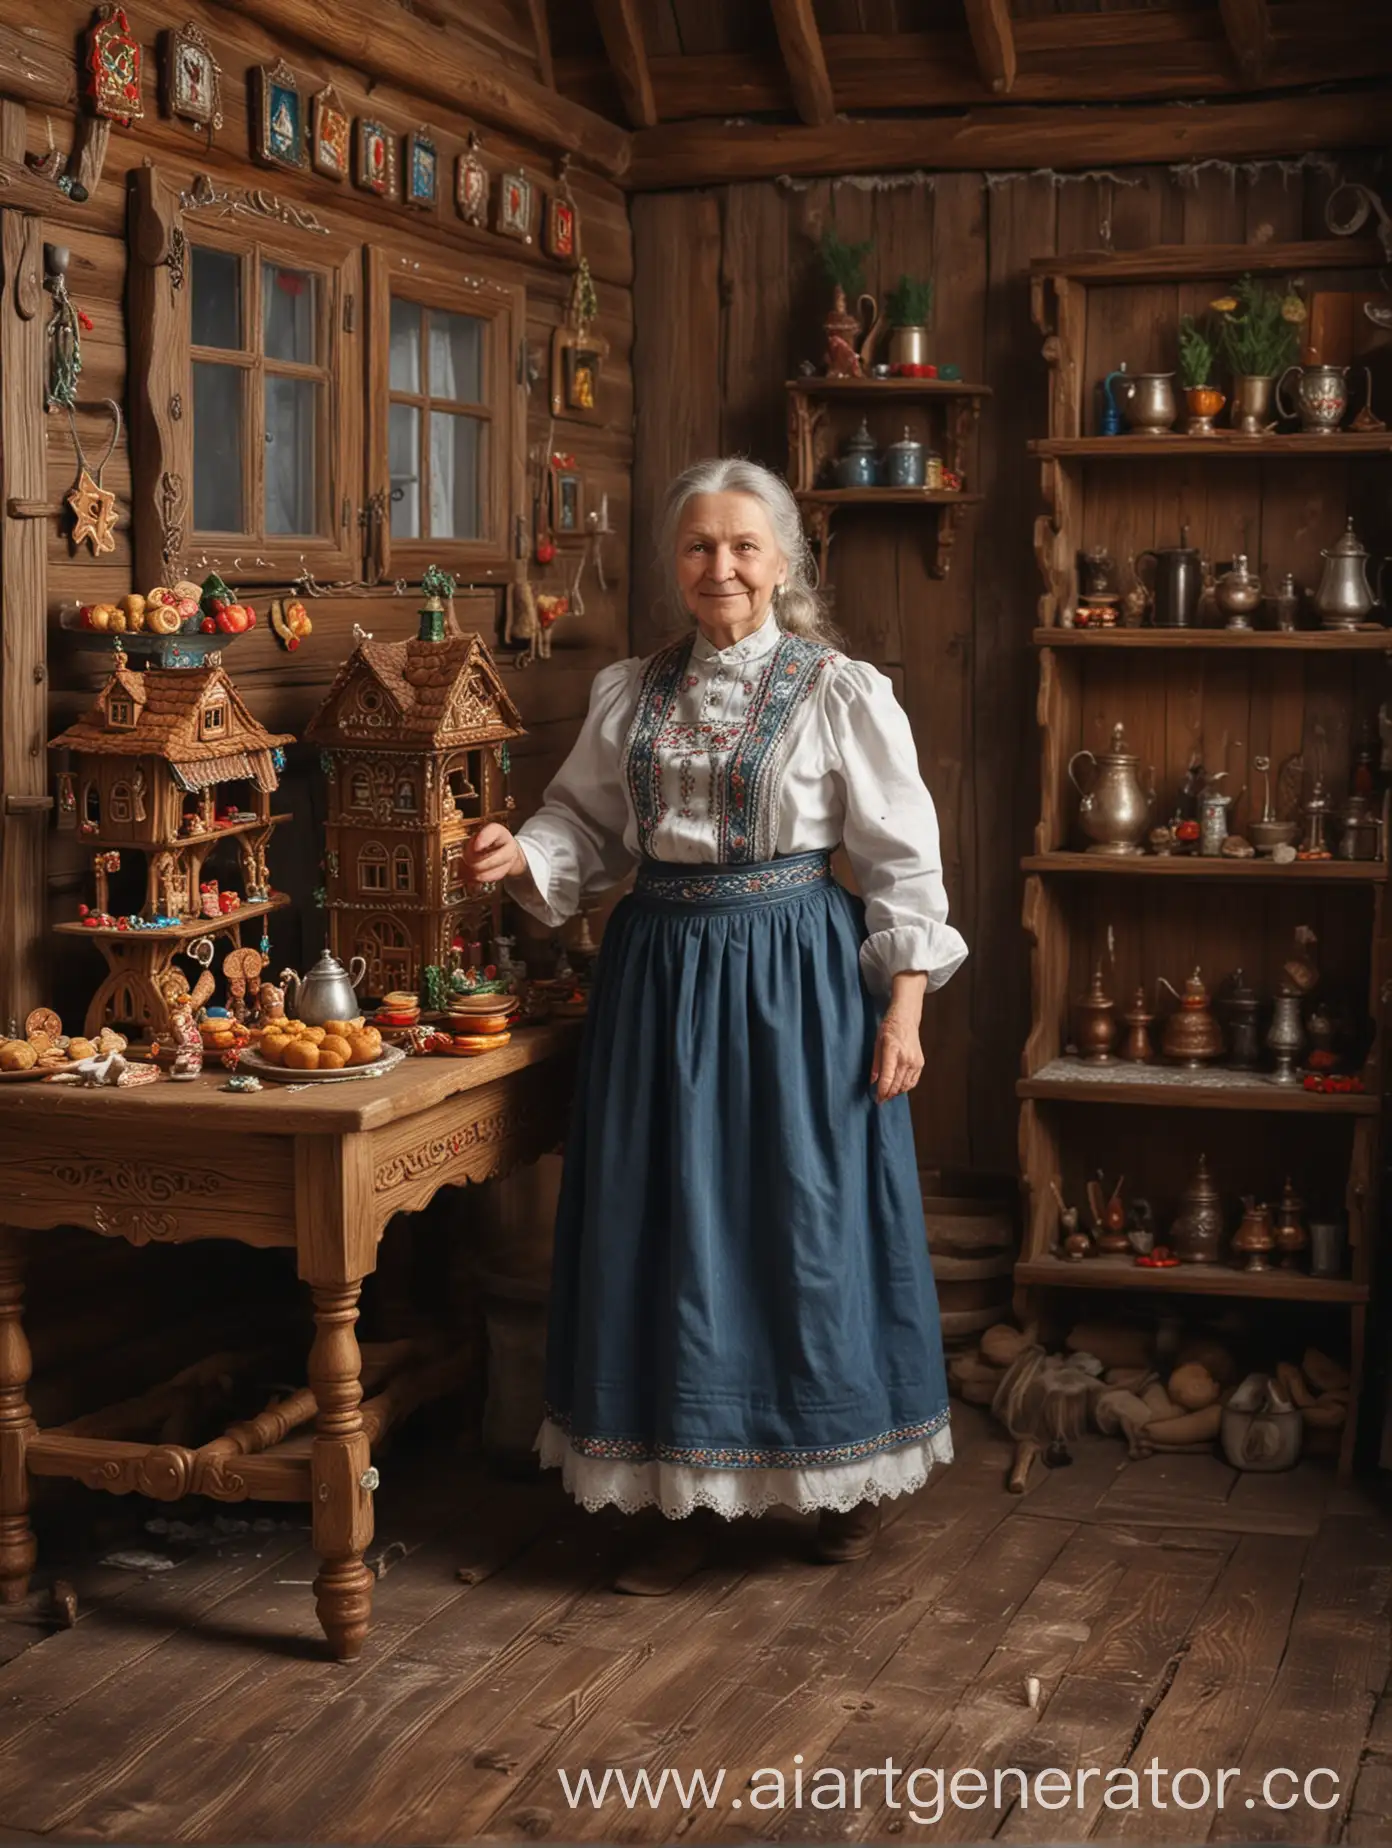 Славянская бабушка в полный рост, в деревянном доме, танцует, рядом стоит стол на котором стоит самовар и пряники, ультрареализм, реализм, качественное фото, чёткость, 4К